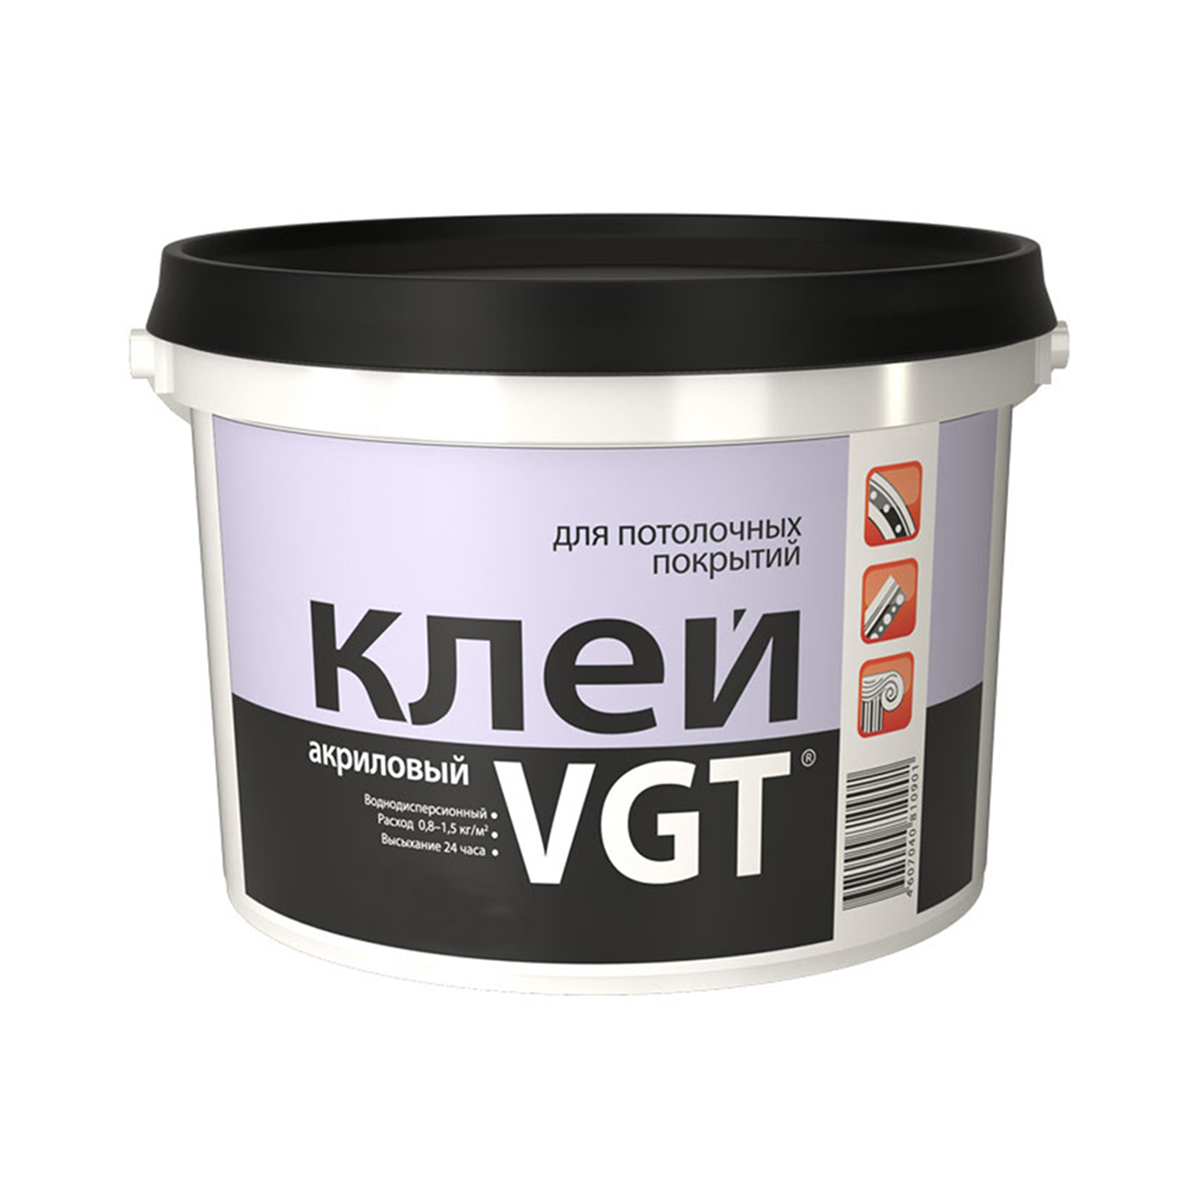 Клей для потолочных покрытий VGT, акриловый, 0,5 кг клей акриловый для потолочных покрытий 0 4 кг vgt